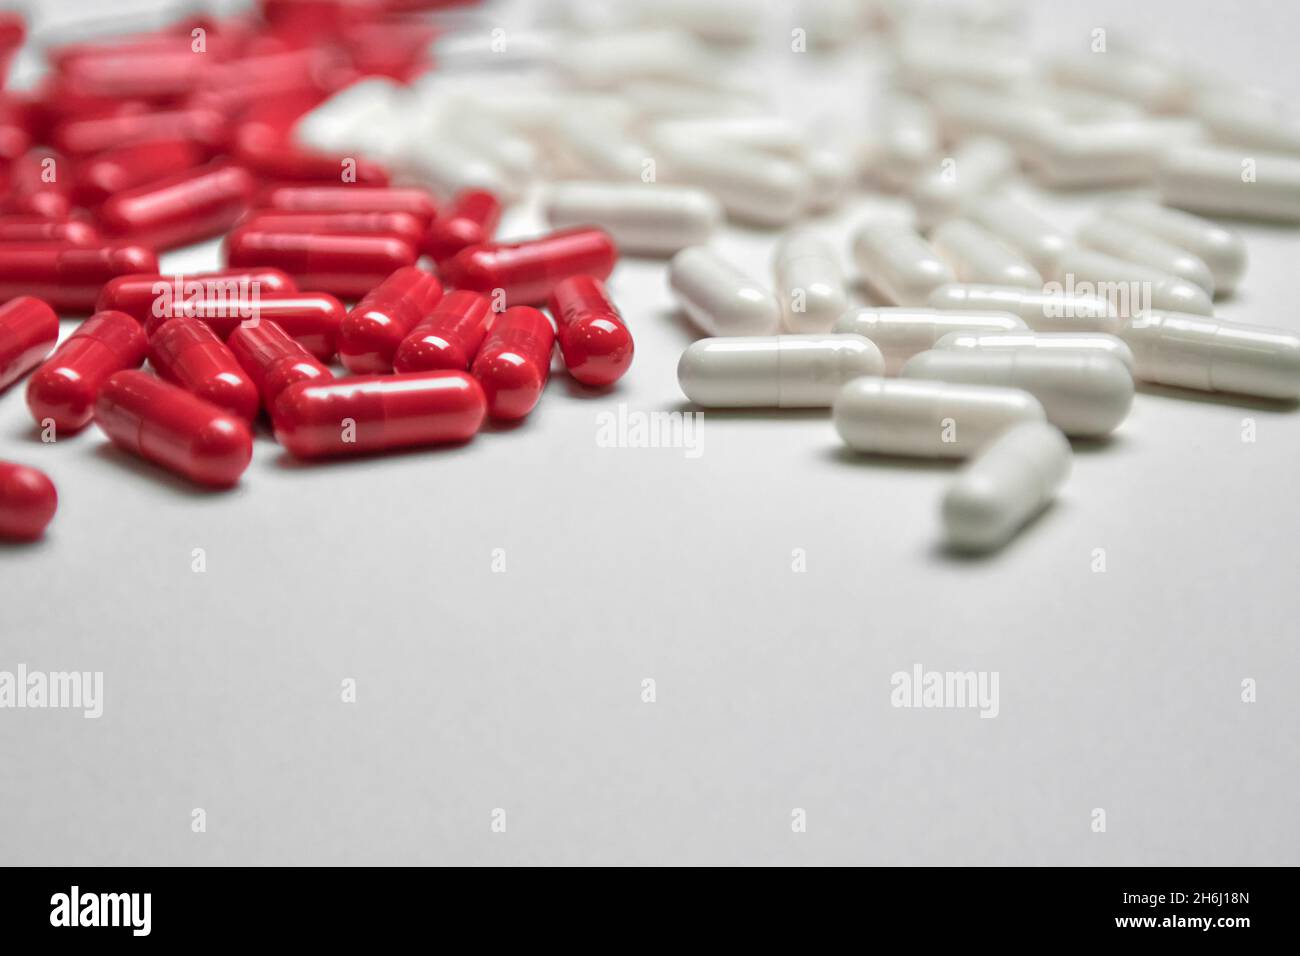 Beaucoup de pilules blanches et rouges sur un fond coloré.Suppléments et médicaments qui sont bons pour votre santé Banque D'Images